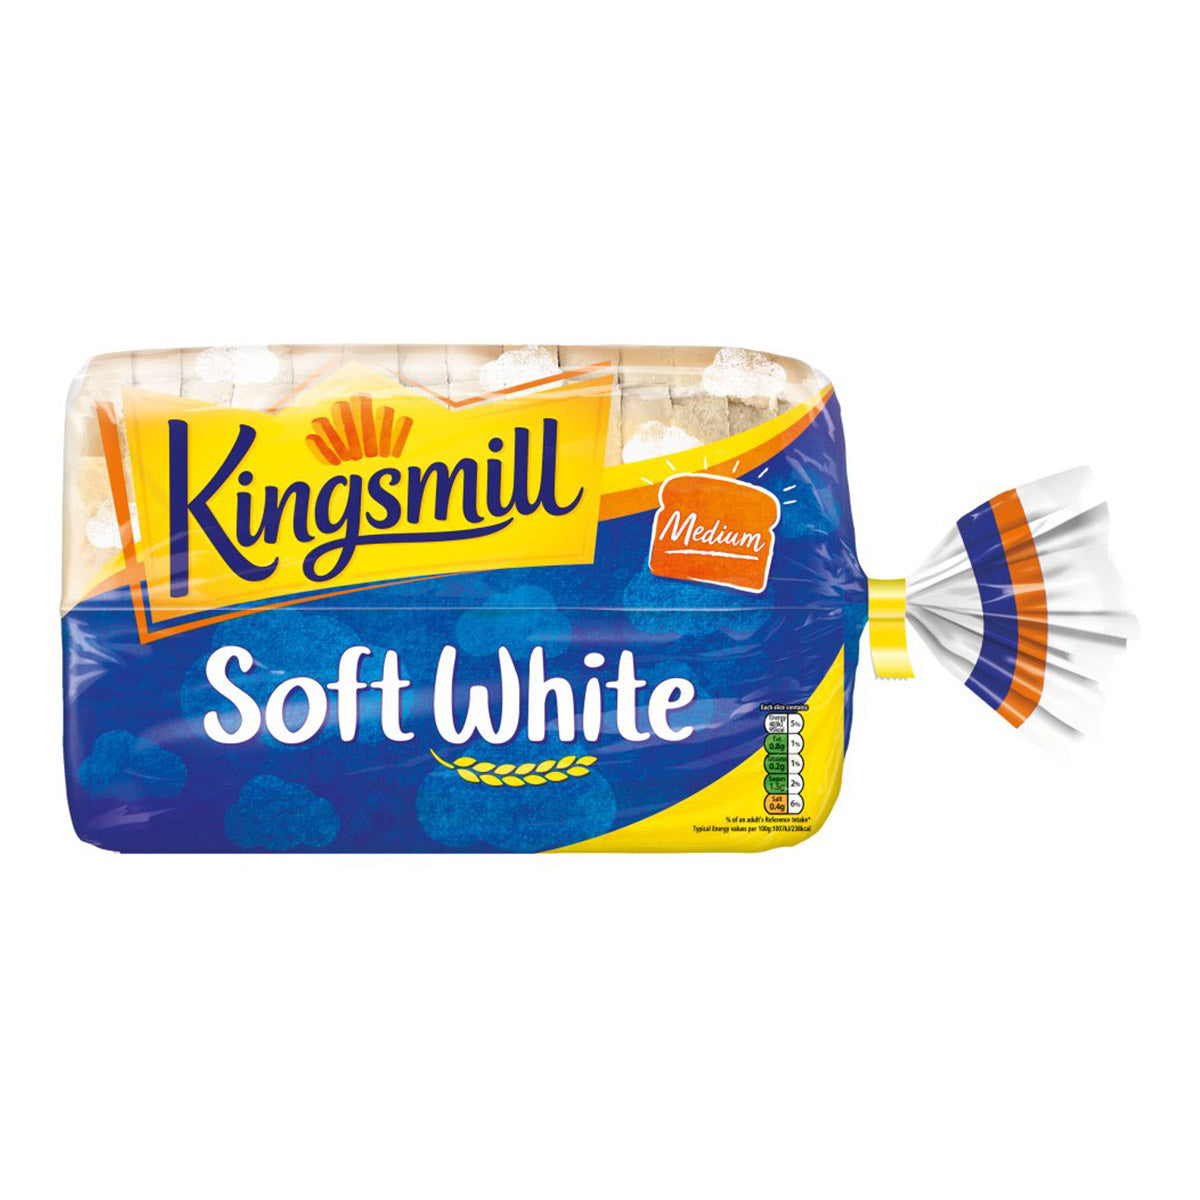 Kingsmill - Medium Soft White Sliced Bread - 800g on a white background.